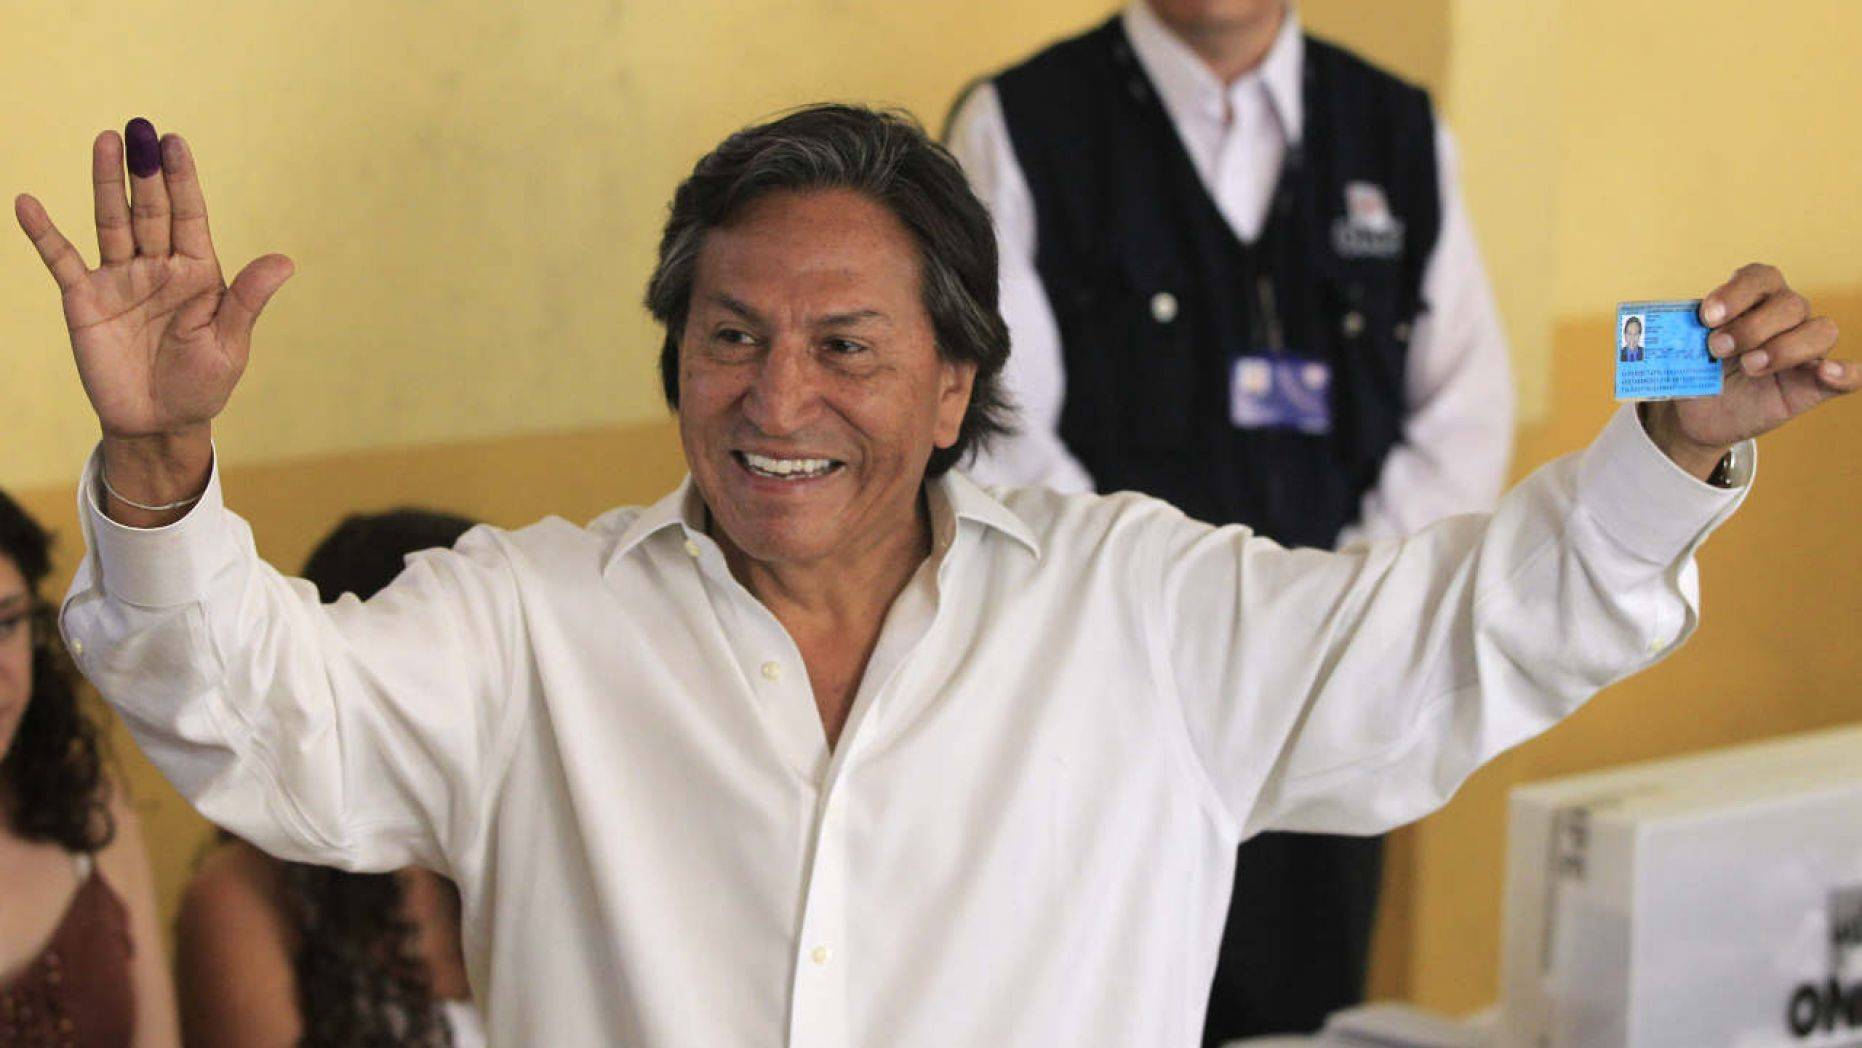 Ex-Peru president arrested in California drunkenness case